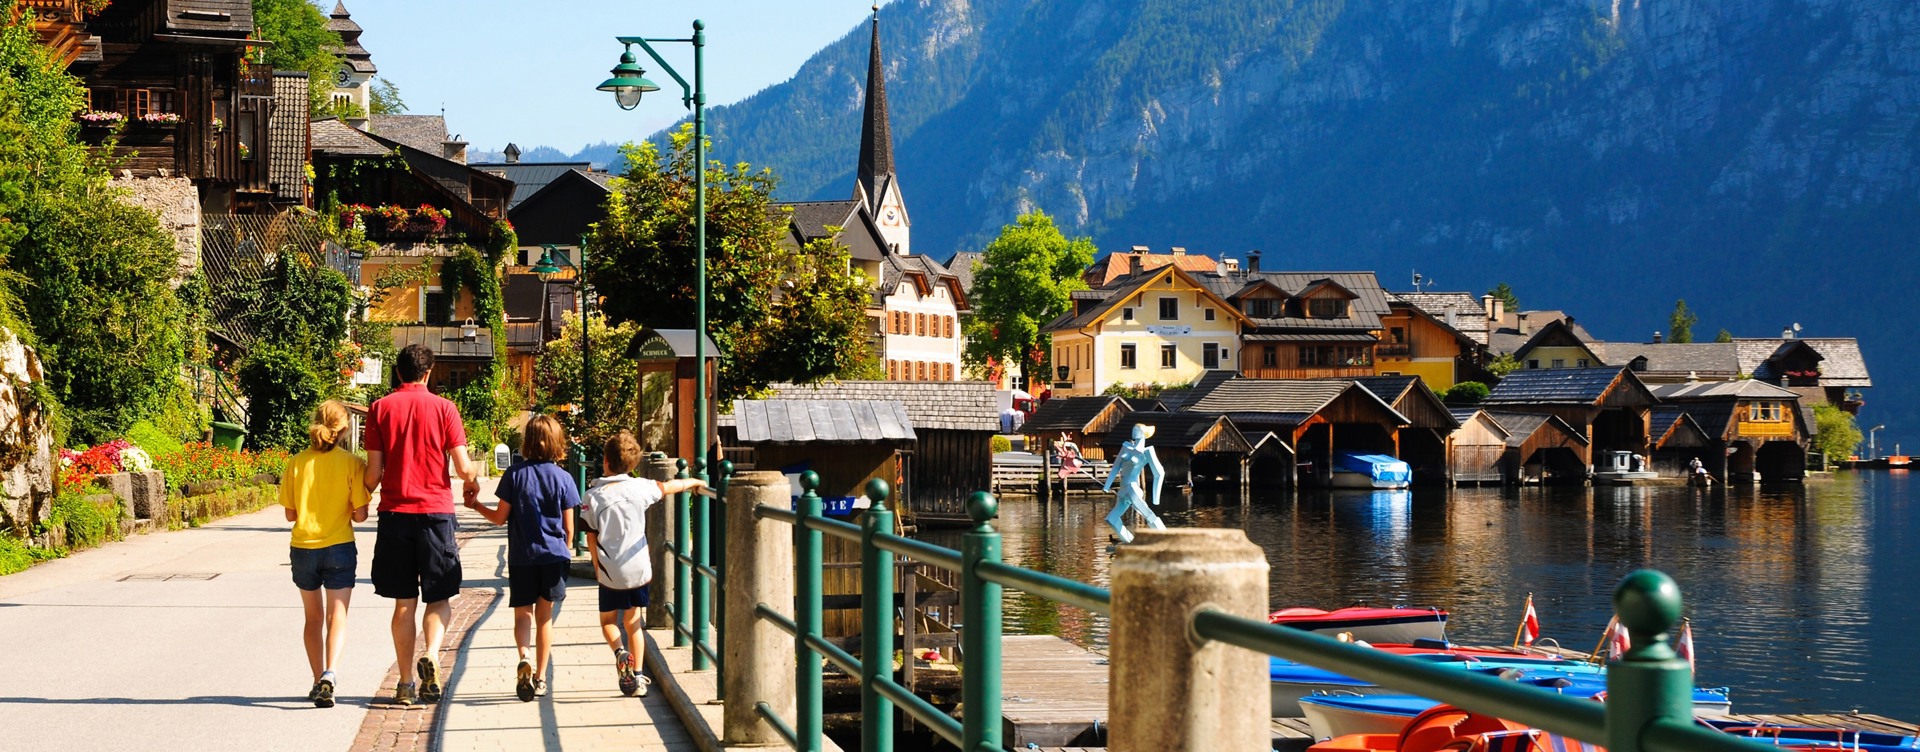 Los Alpes austríacos:
el destino ideal para el verano